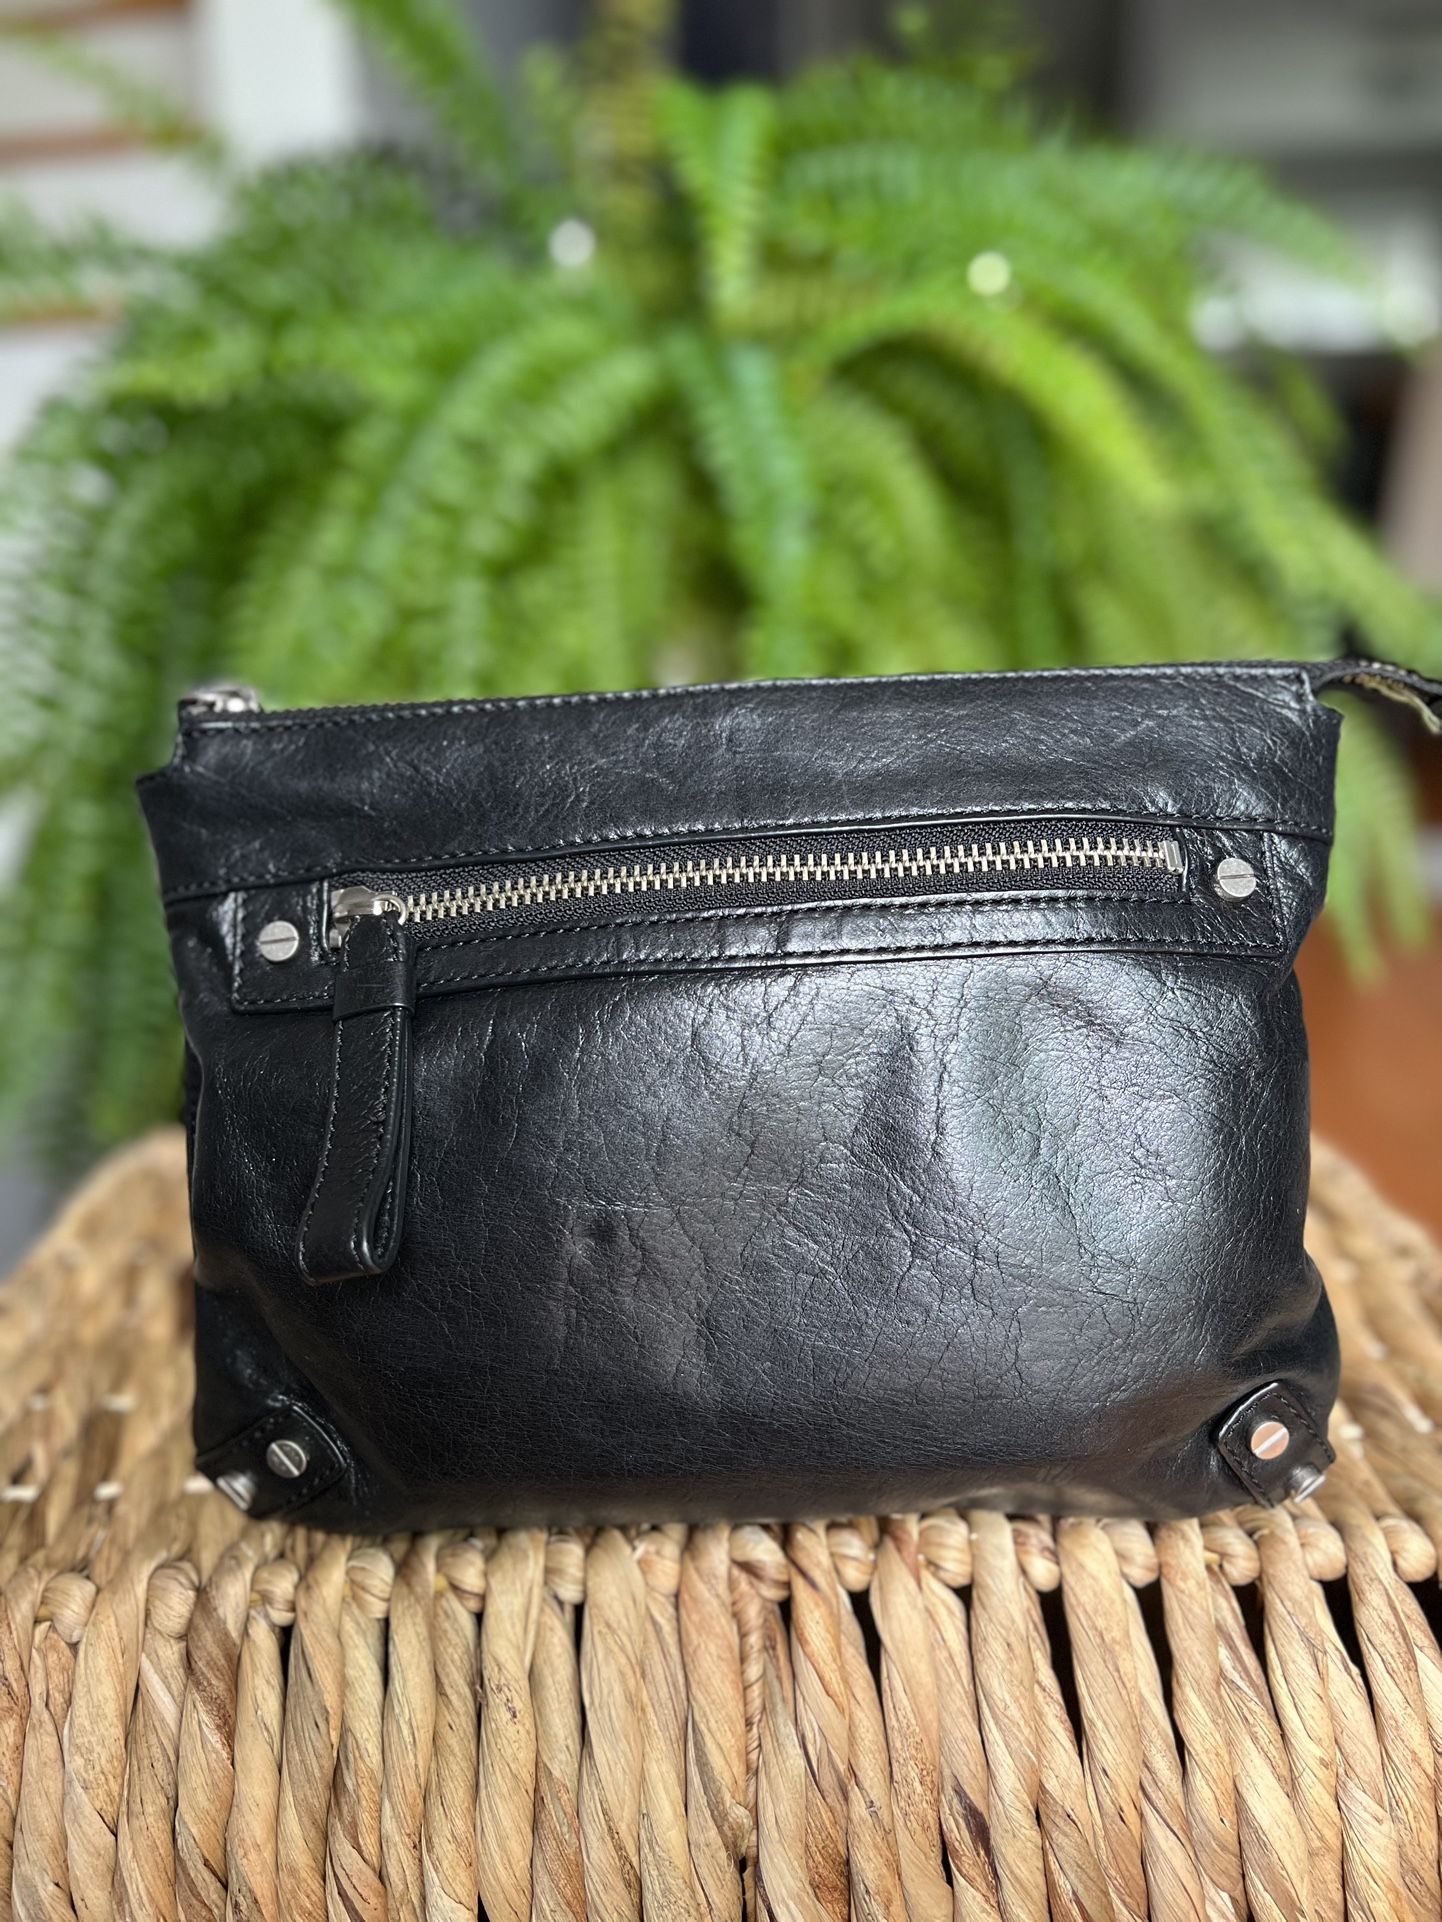 Club Monaco Leather Wristlet Clutch purse With Wrist Strap